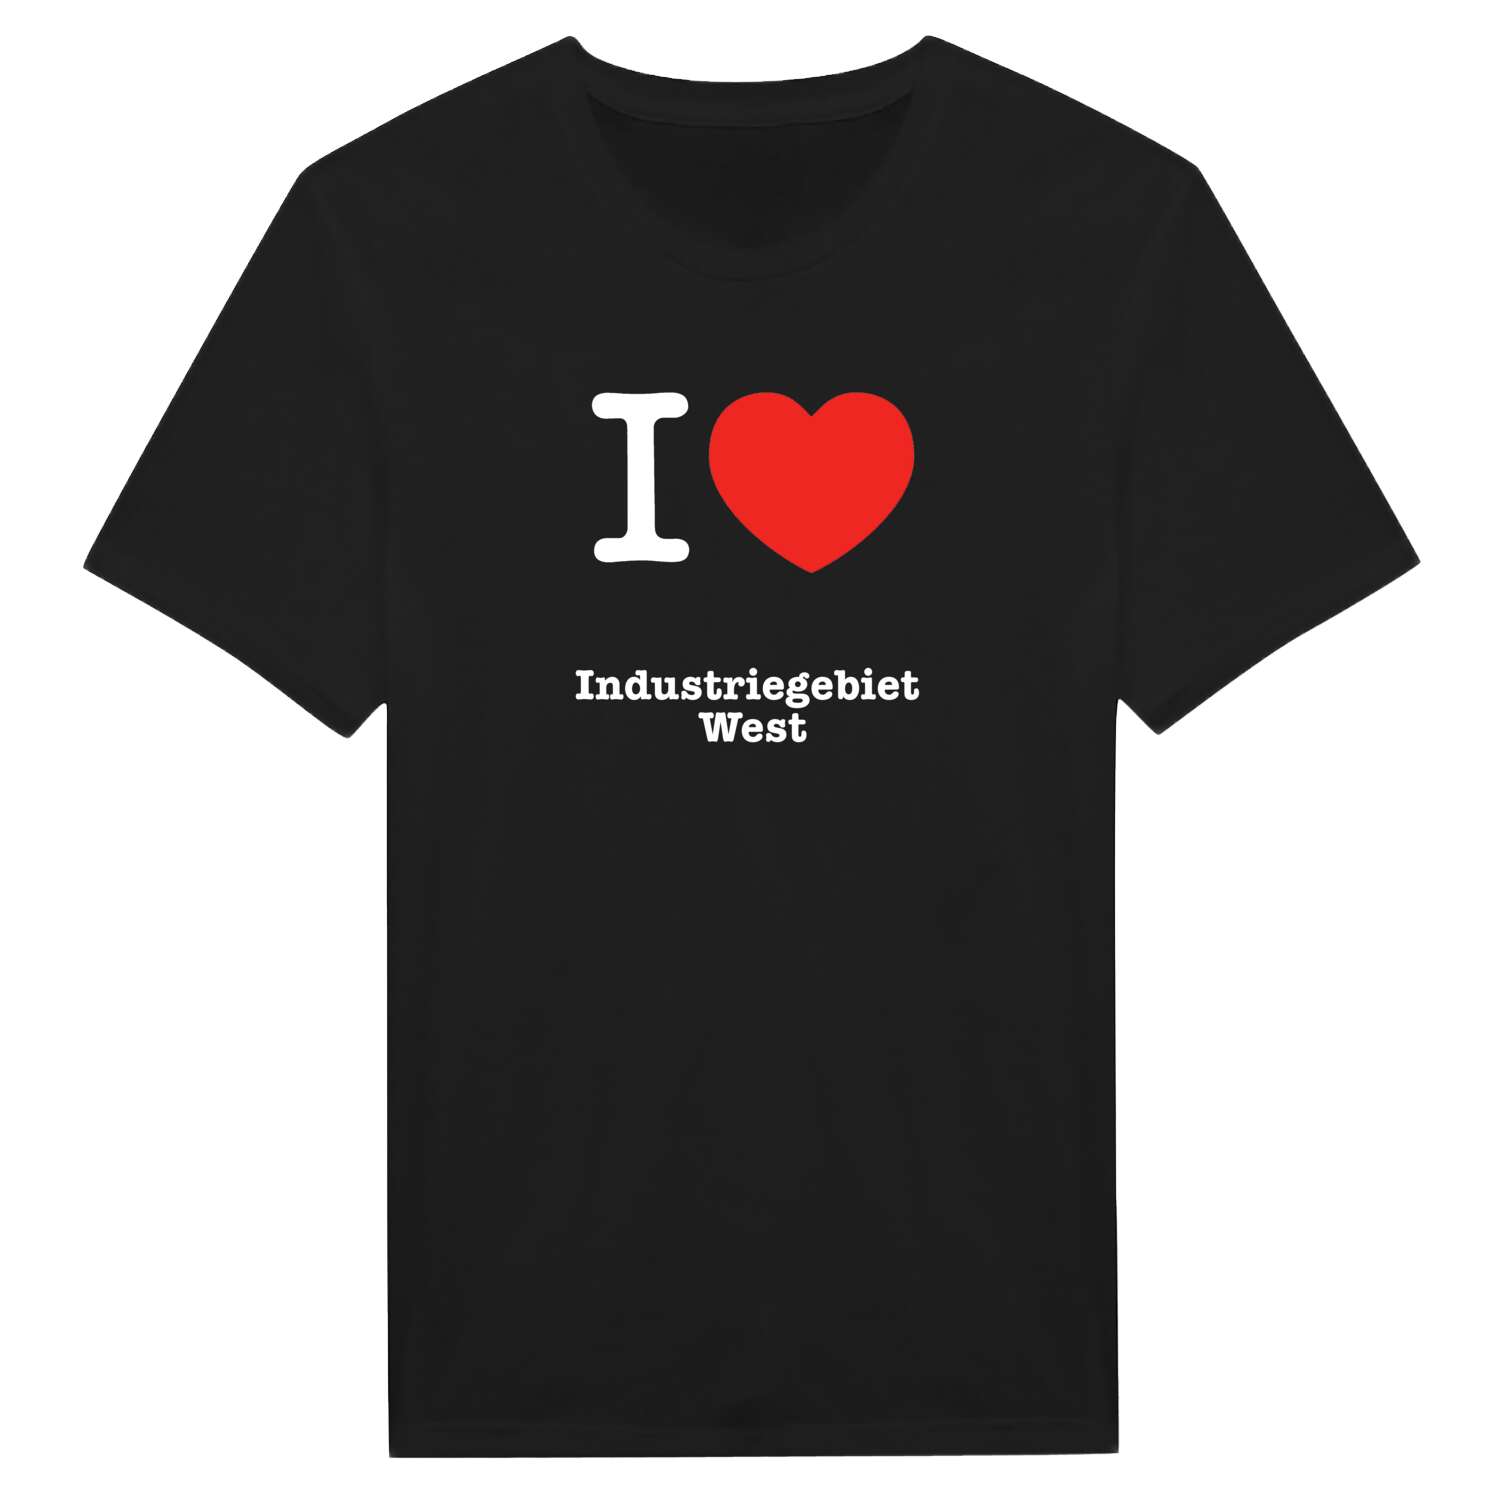 Industriegebiet West T-Shirt »I love«